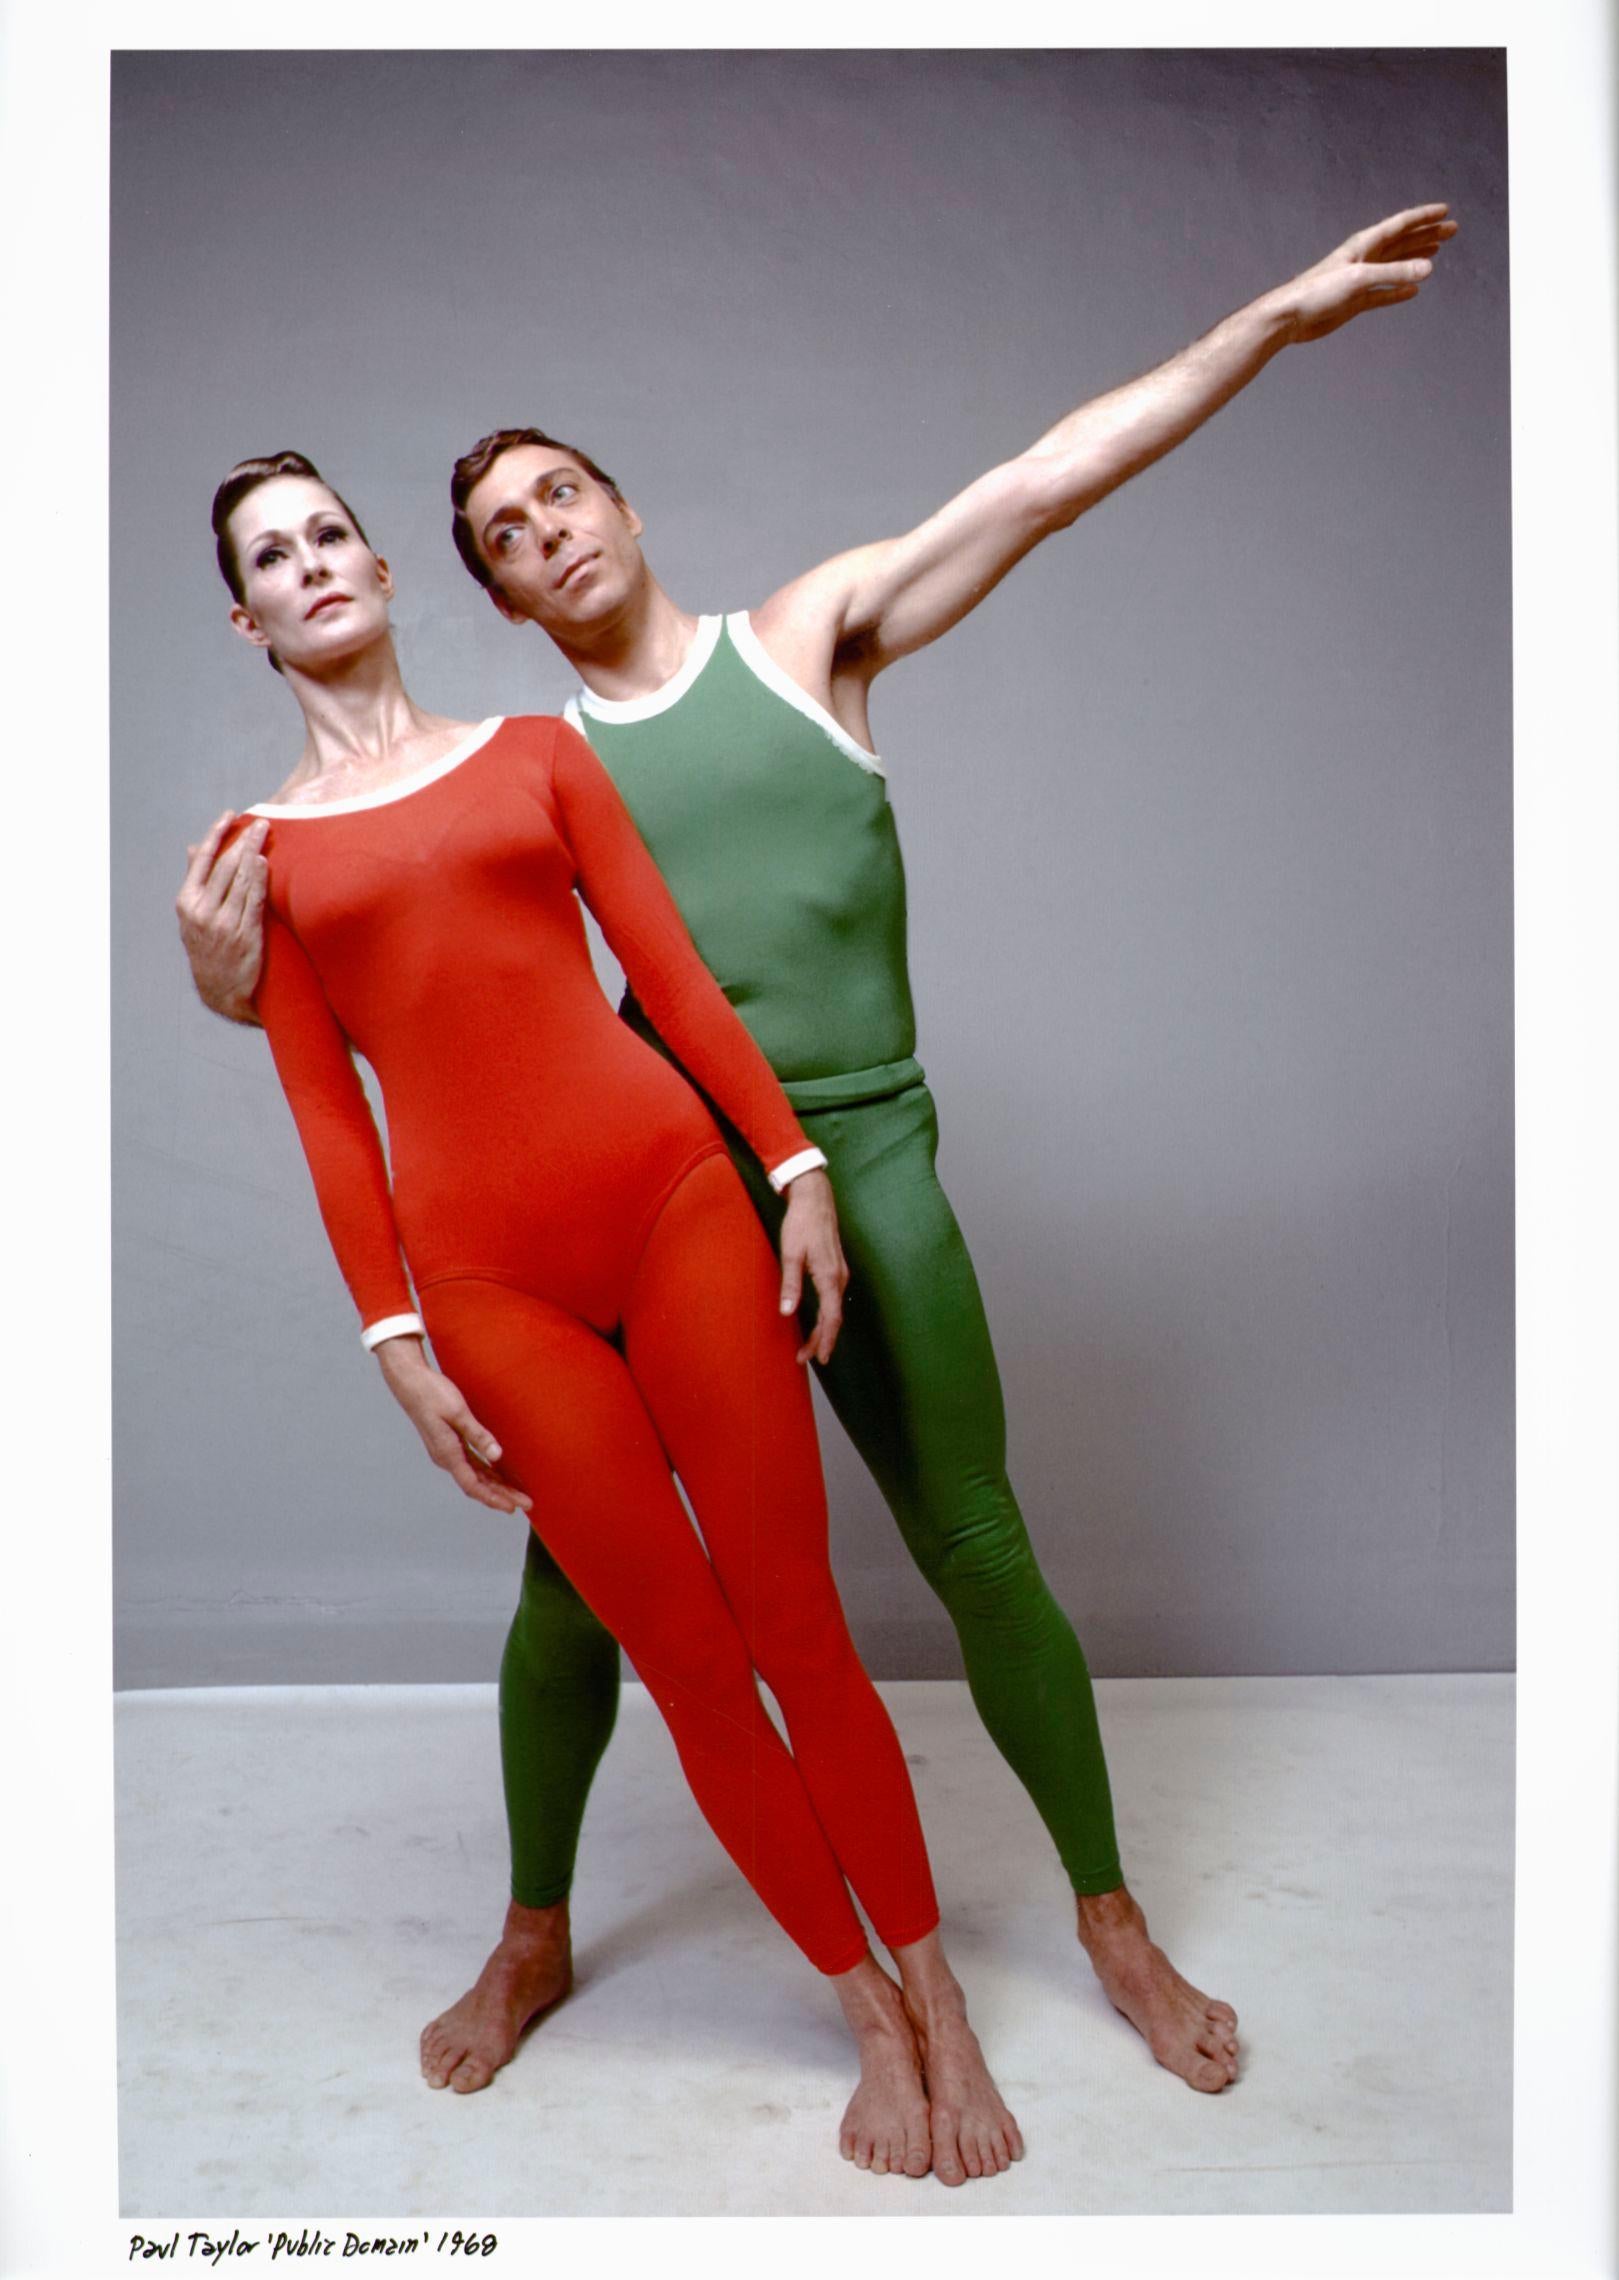 Jack Mitchell Color Photograph - Dancer/choreographer Paul Taylor & Bettie de Jong performing 'Public Domain'